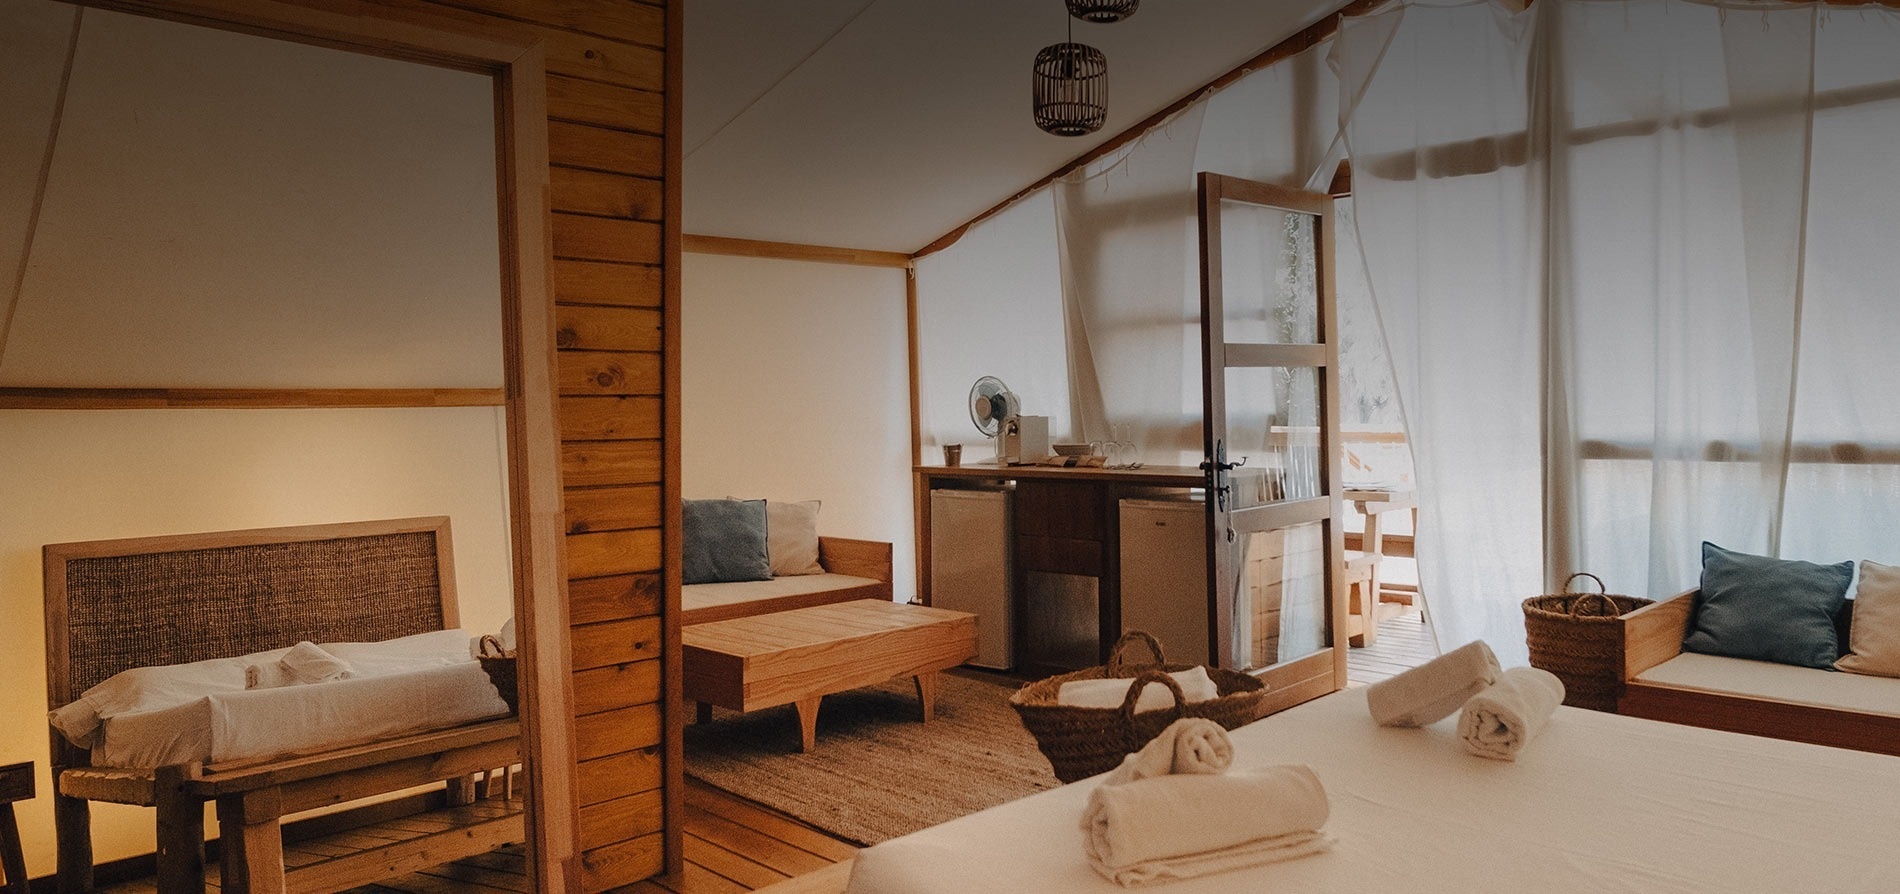 una habitación con muebles de madera y cortinas blancas